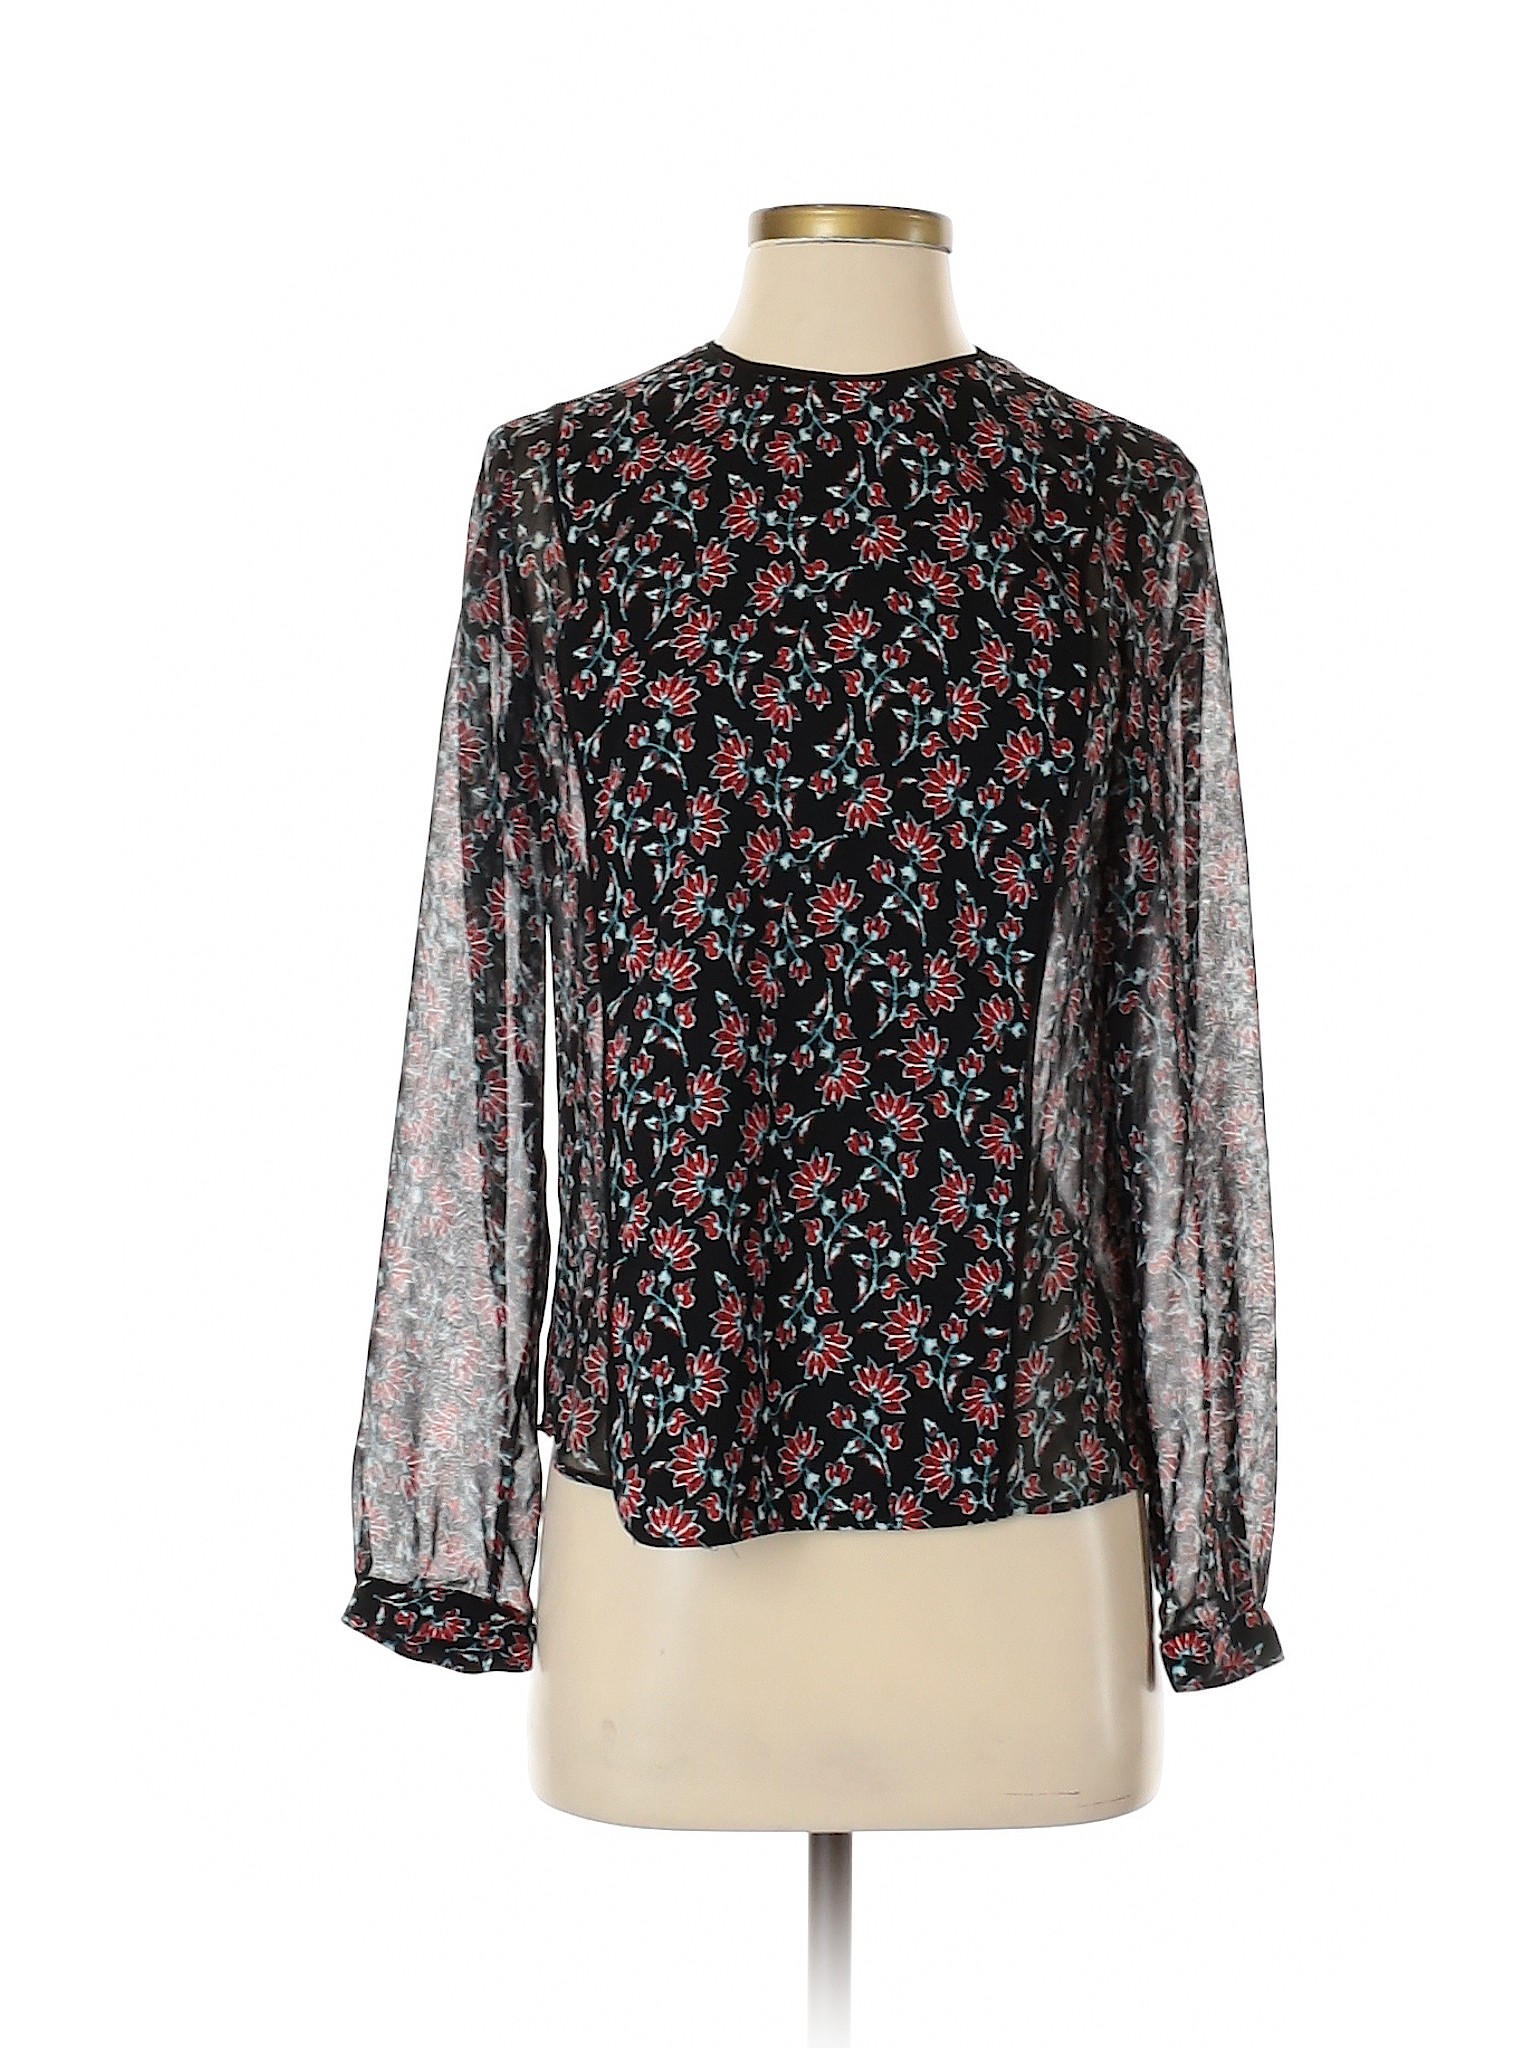 Zara Basic Women Black Long Sleeve Blouse S | eBay